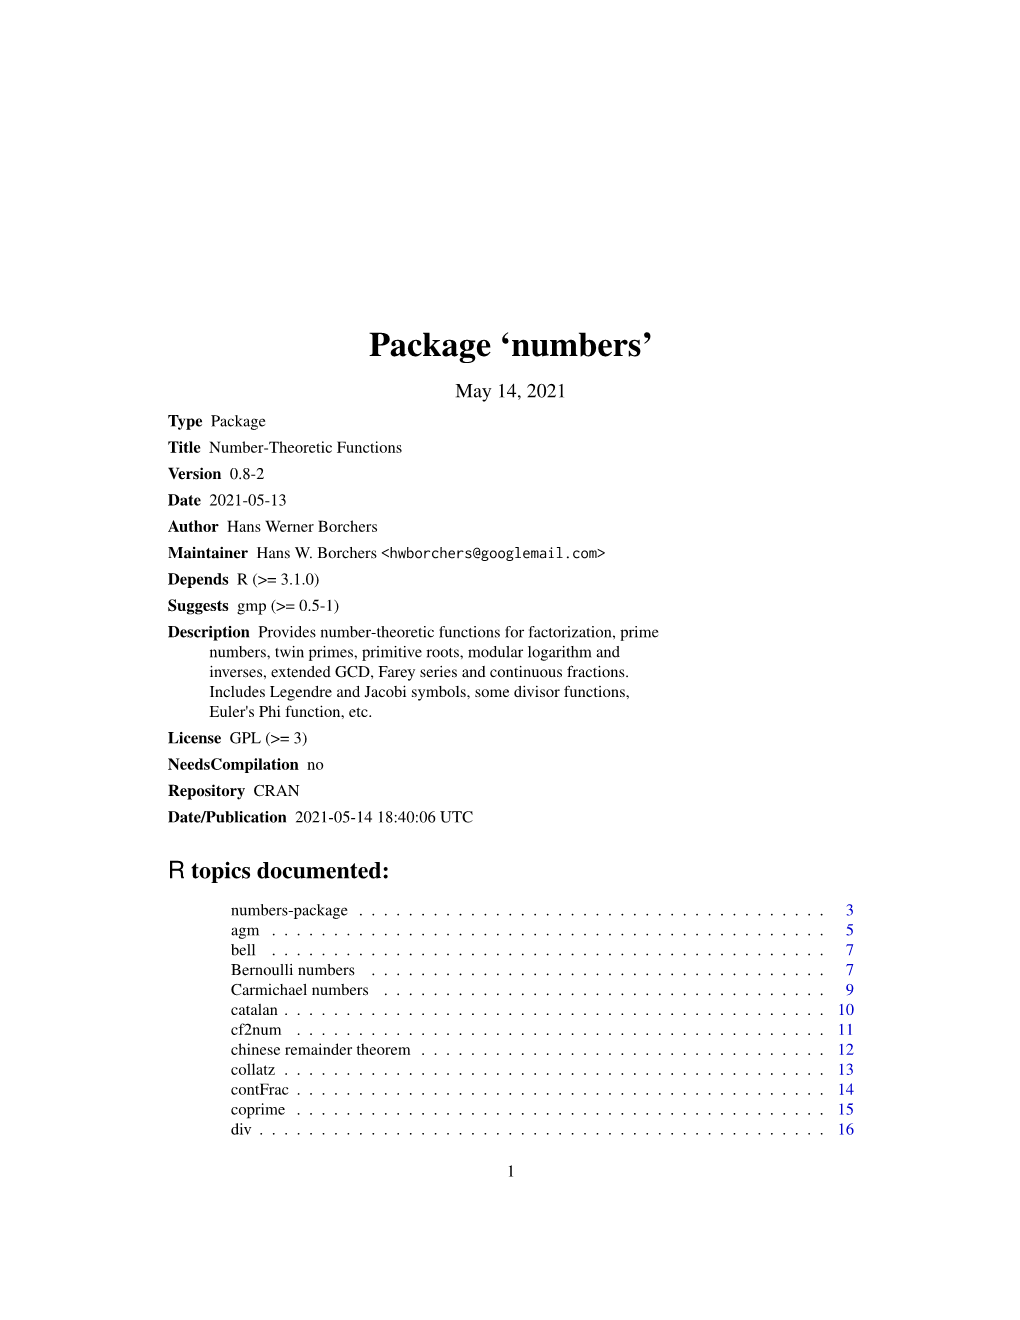 Package 'Numbers'